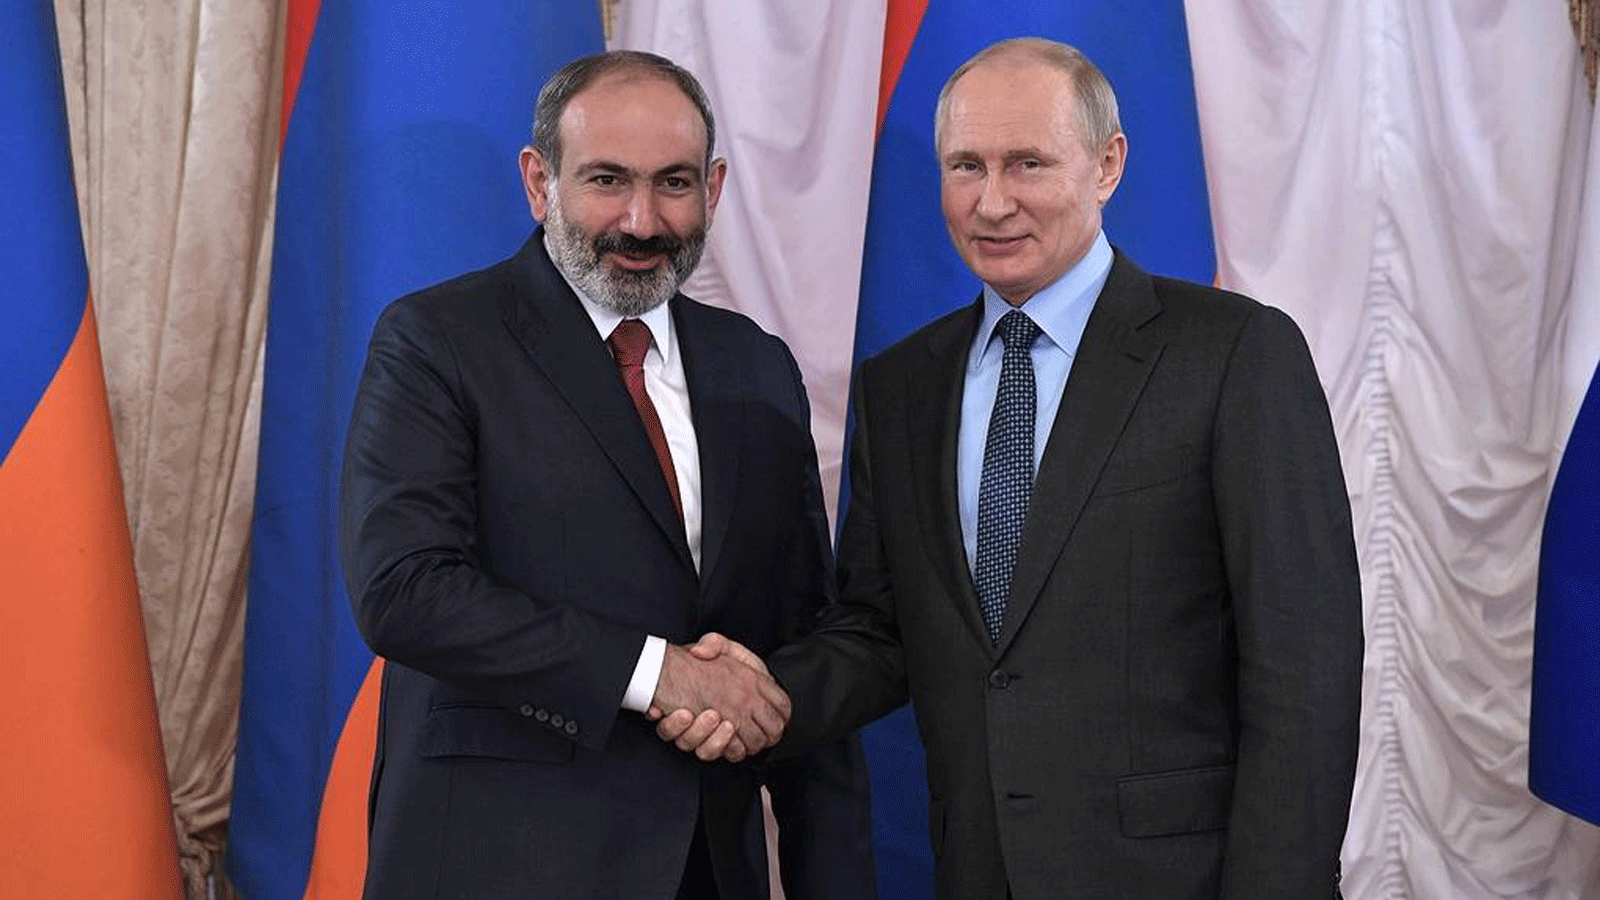 الرئيسان الروسي فلاديمير بوتين والأرميني نيكول باشينيان